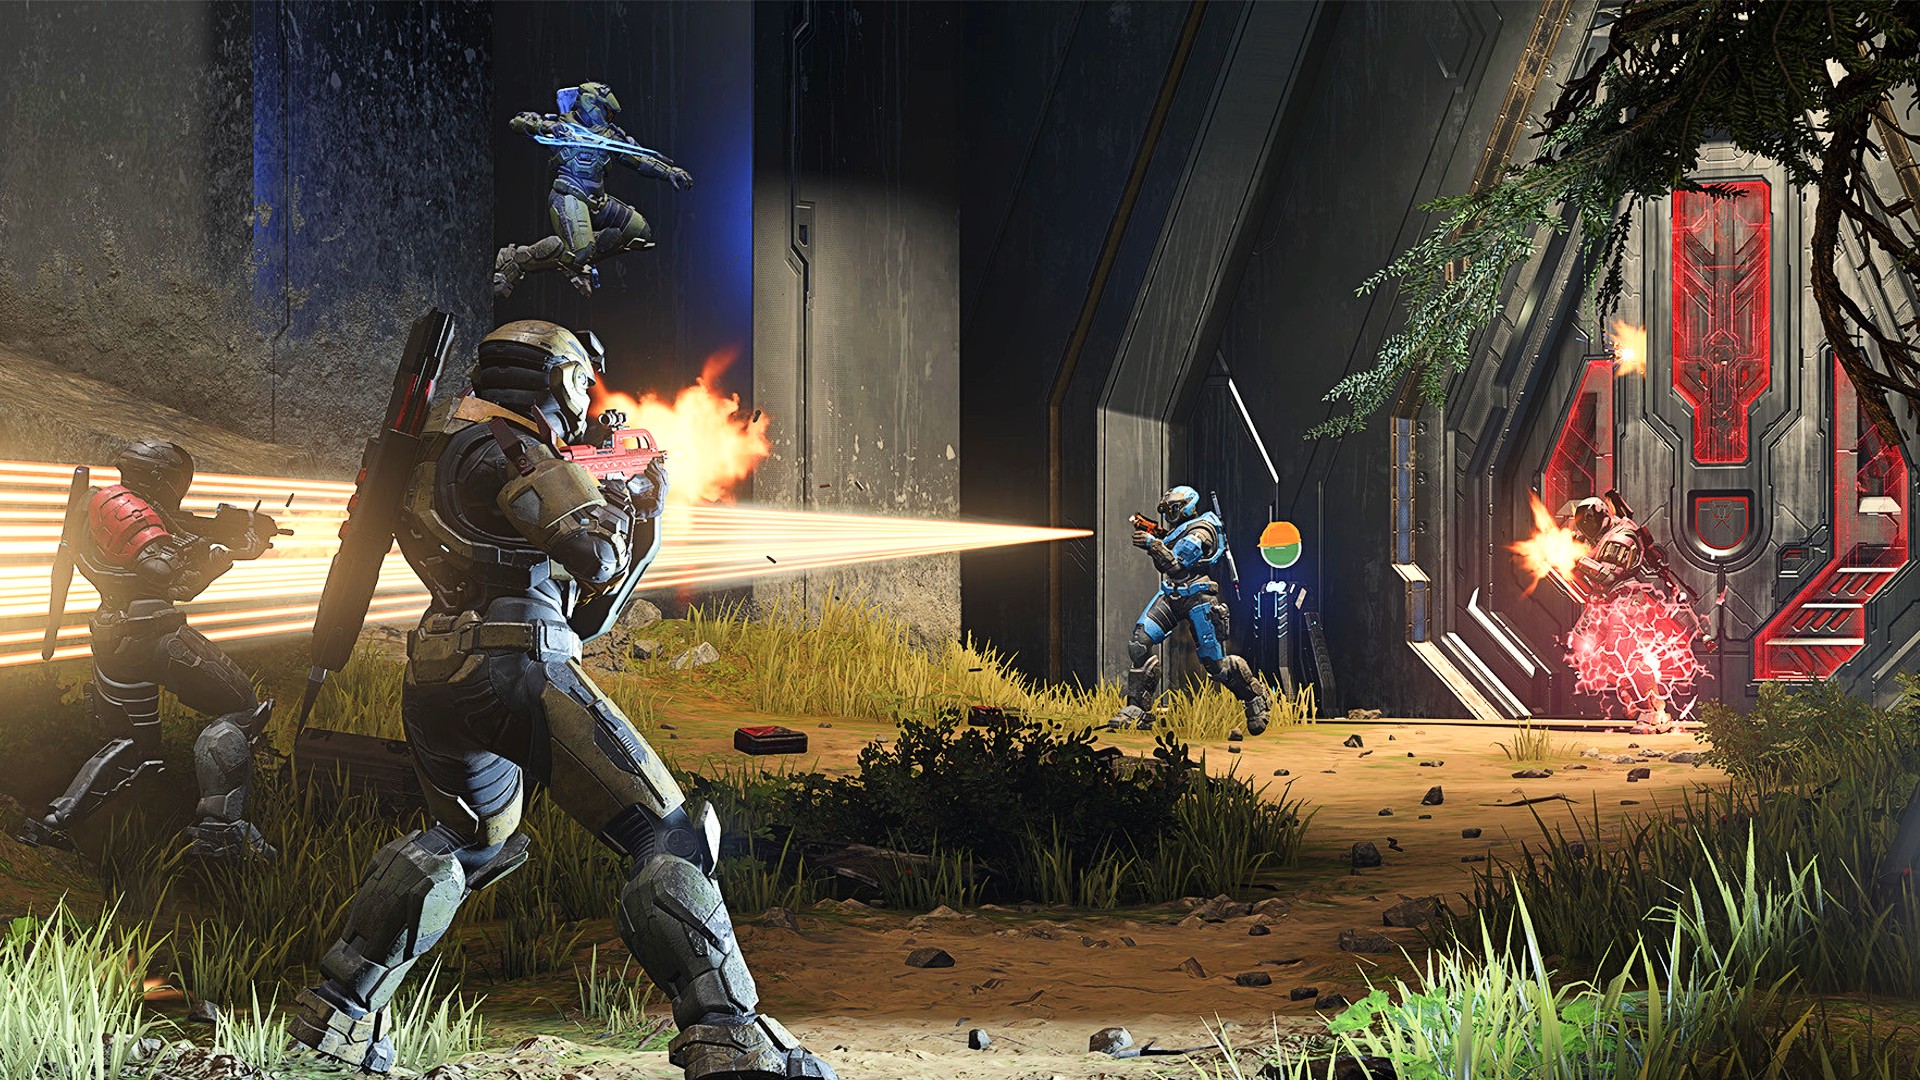 Les développeurs de Halo Infinite « examinent la progression des passes de combat »